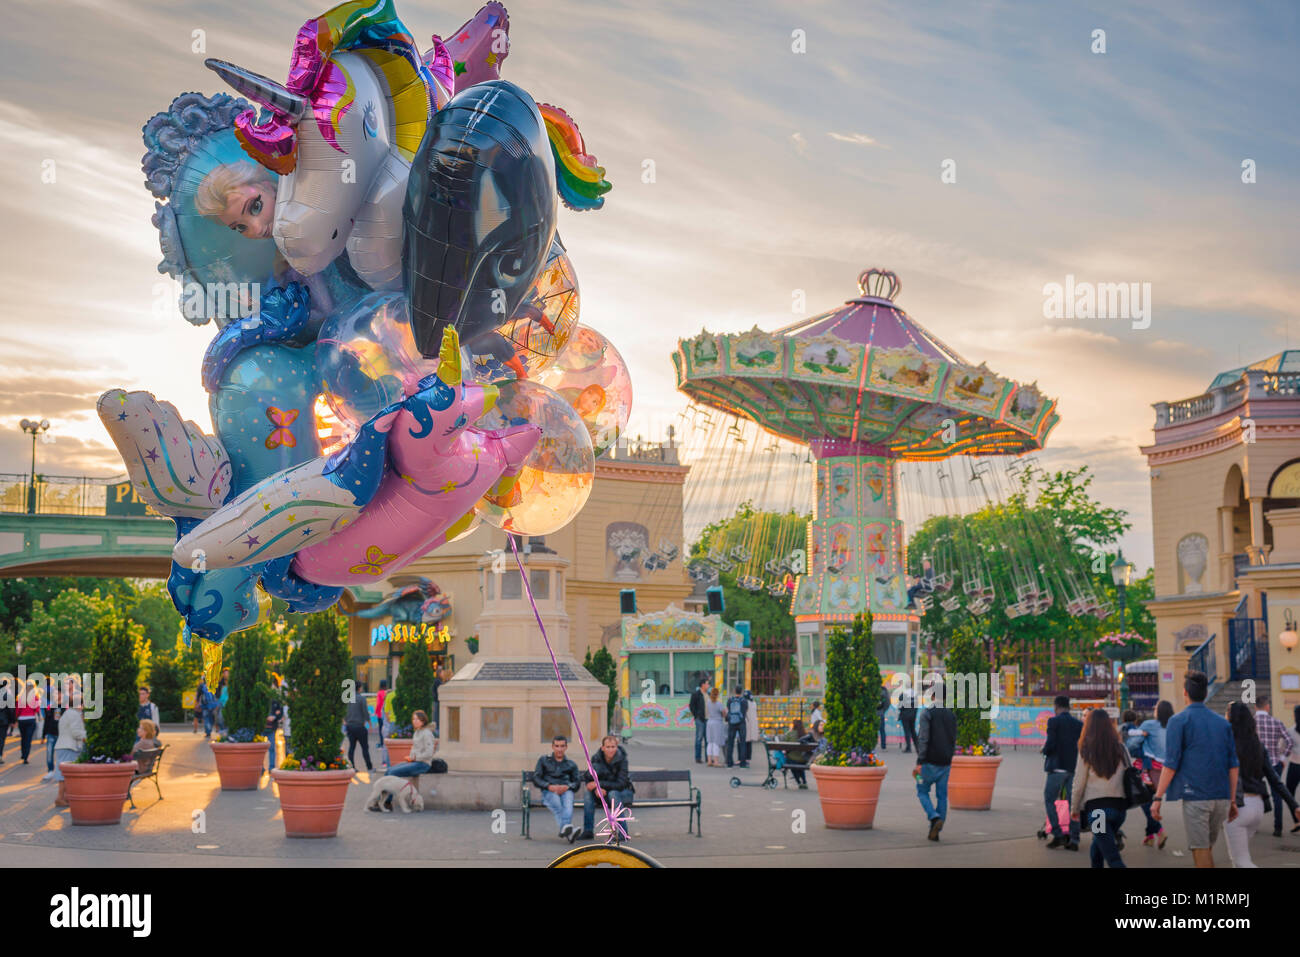 Vergnügungspark Wiener Prater, Blick auf bunte Luftballons und ein Karussell in der Nähe des Eingangs zum berühmten Prater in Wien. Stockfoto